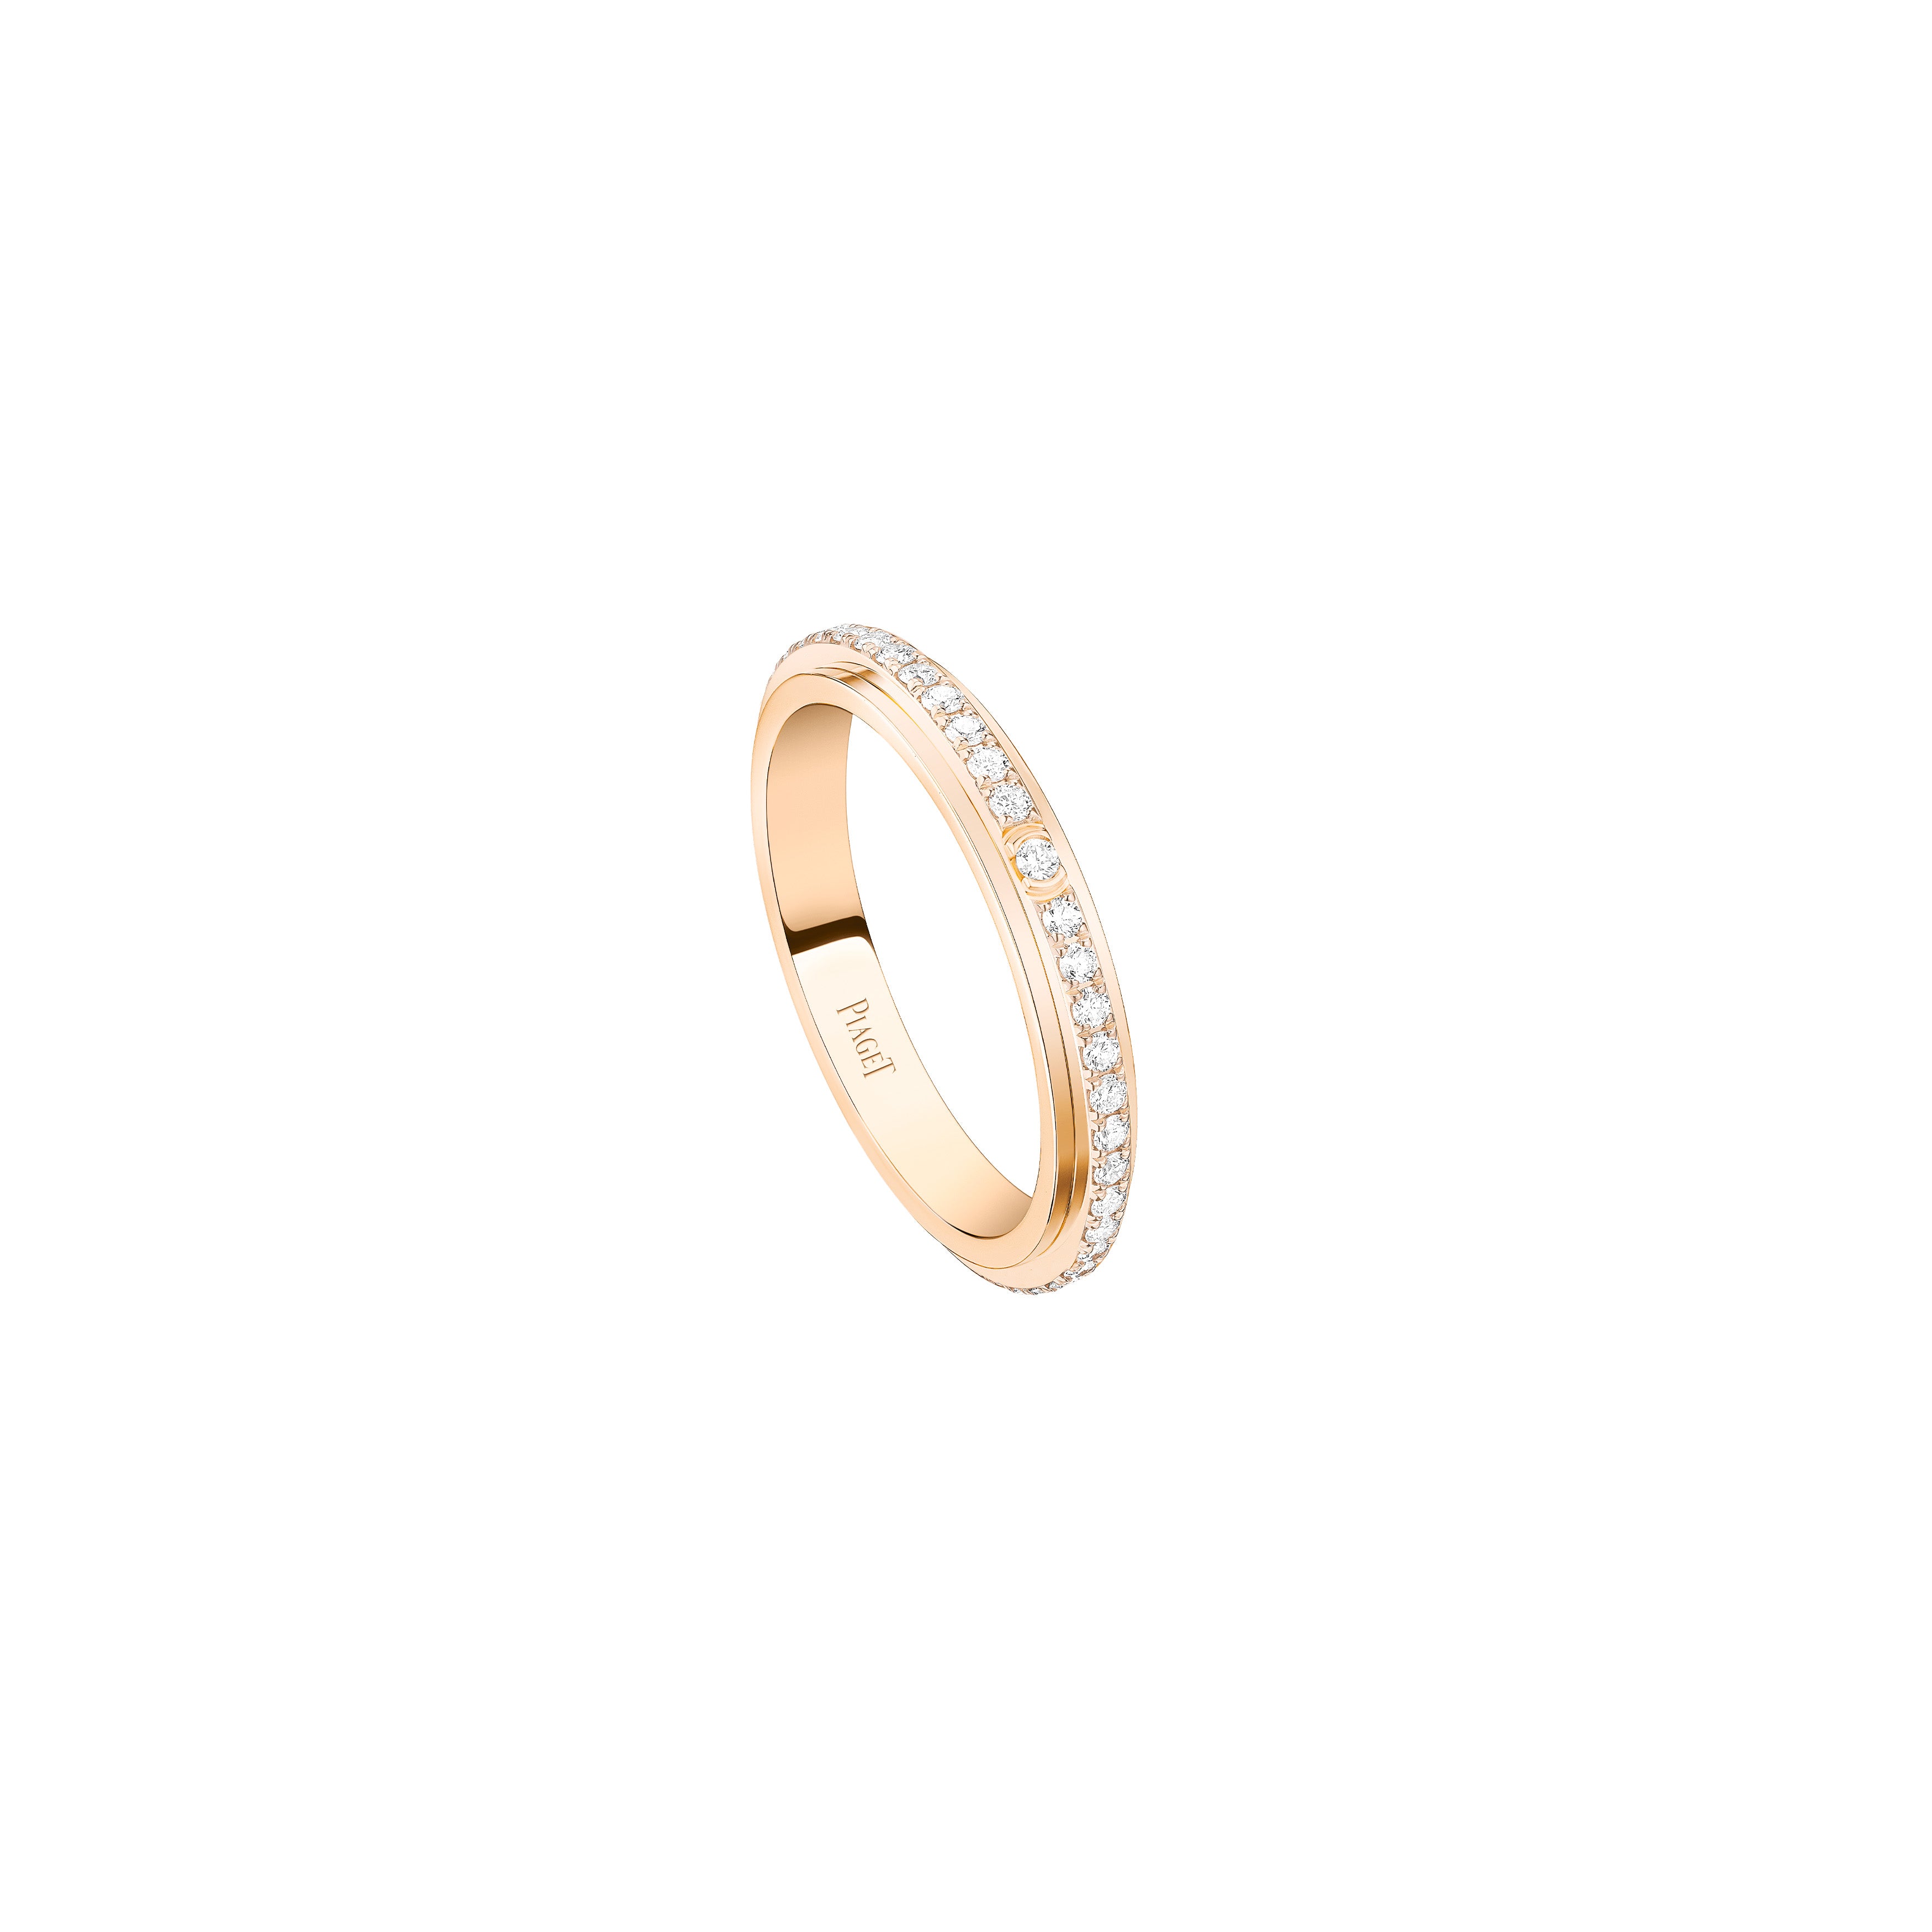 Piaget Posession 18k Rose Gold Diamond Ring G34P1M50